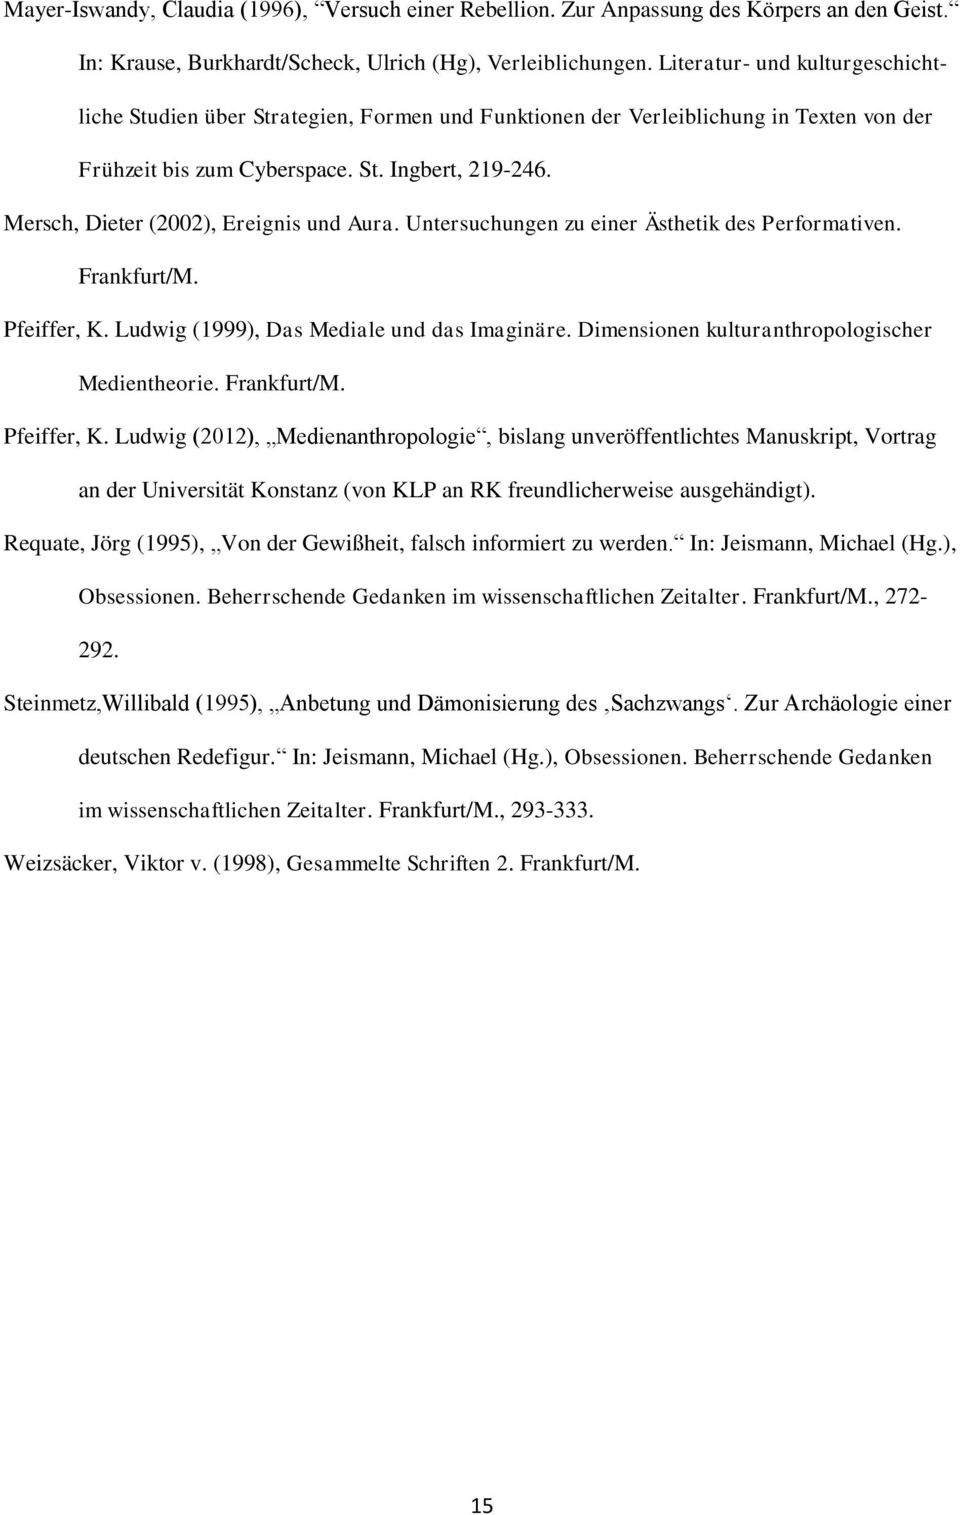 Mersch, Dieter (2002), Ereignis und Aura. Untersuchungen zu einer Ästhetik des Performativen. Frankfurt/M. Pfeiffer, K. Ludwig (1999), Das Mediale und das Imaginäre.